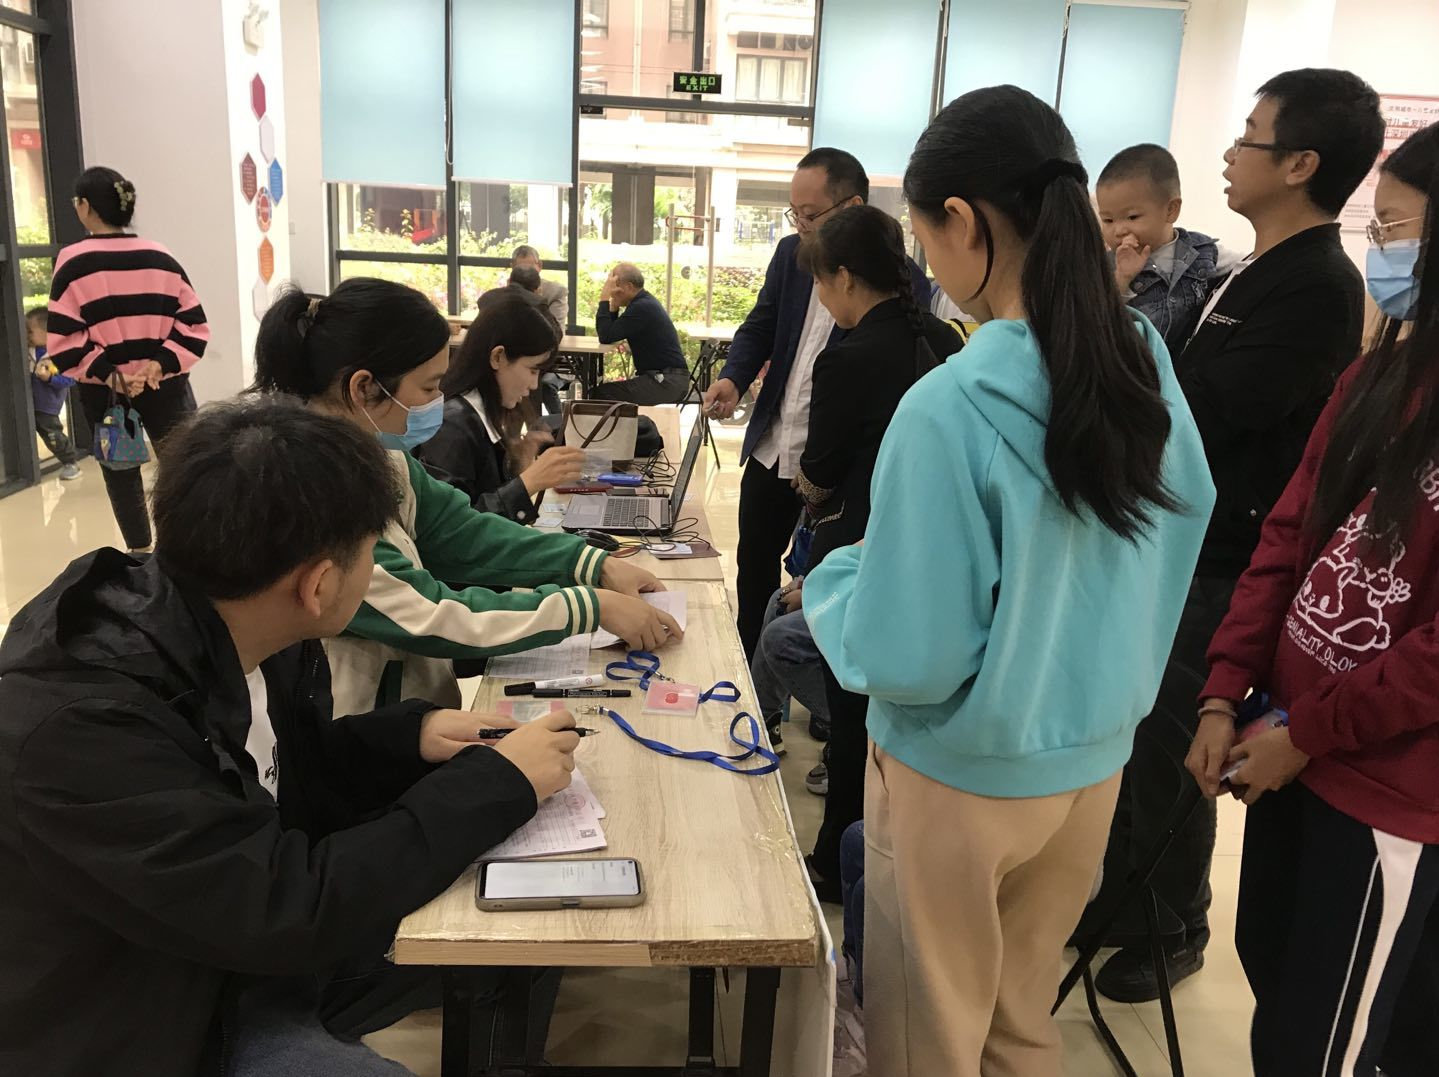 江边社区开展“我为群众办实事”学生深圳通便民服务活动